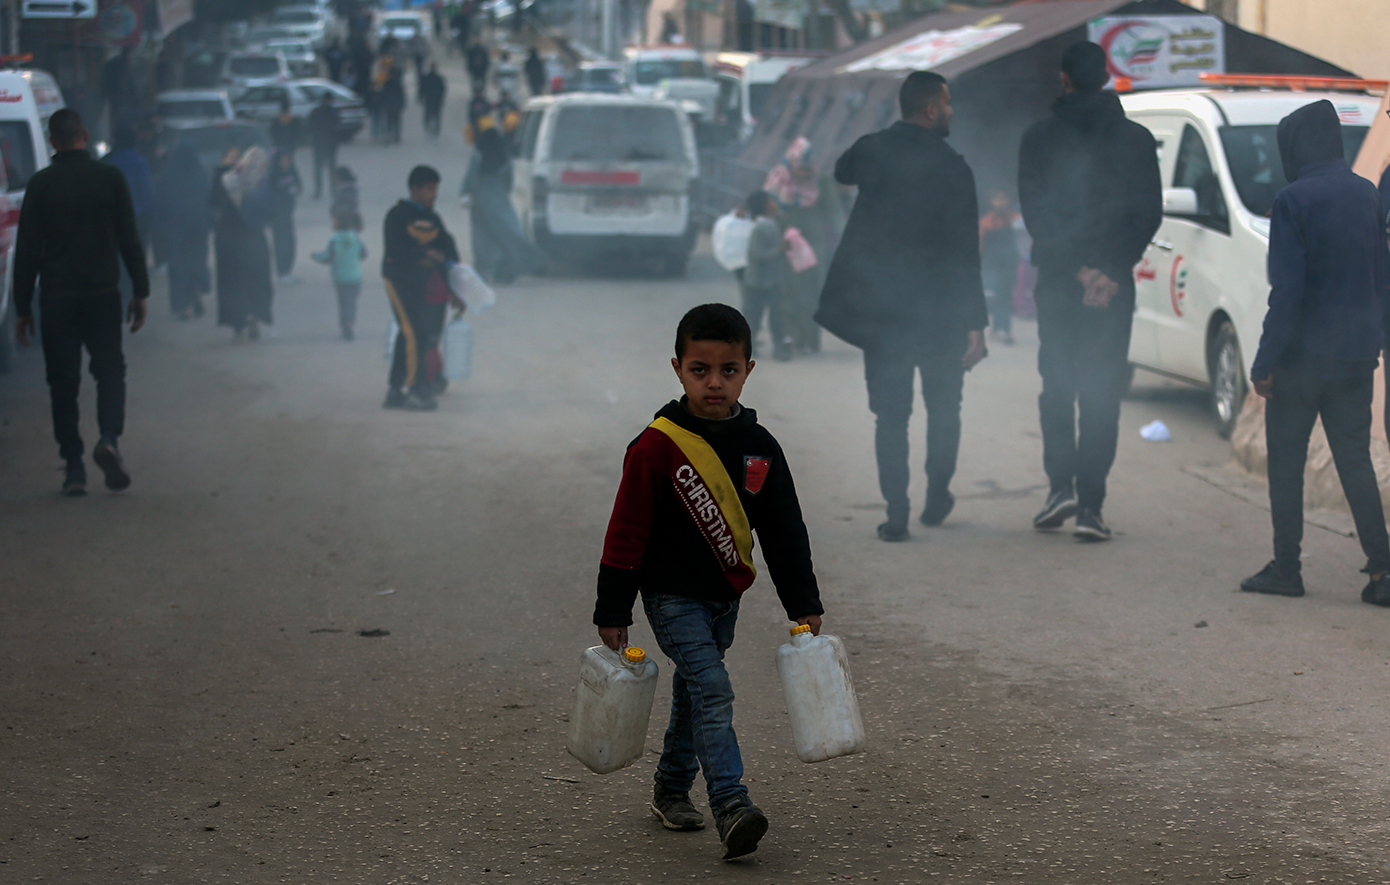 SOS λόγω λιμού στη Γάζα &#8211; «Ο ανθρωπιστικός χώρος συνεχίζει να συρρικνώνεται και η δυνατότητα παροχής βοήθειας μειώνεται»